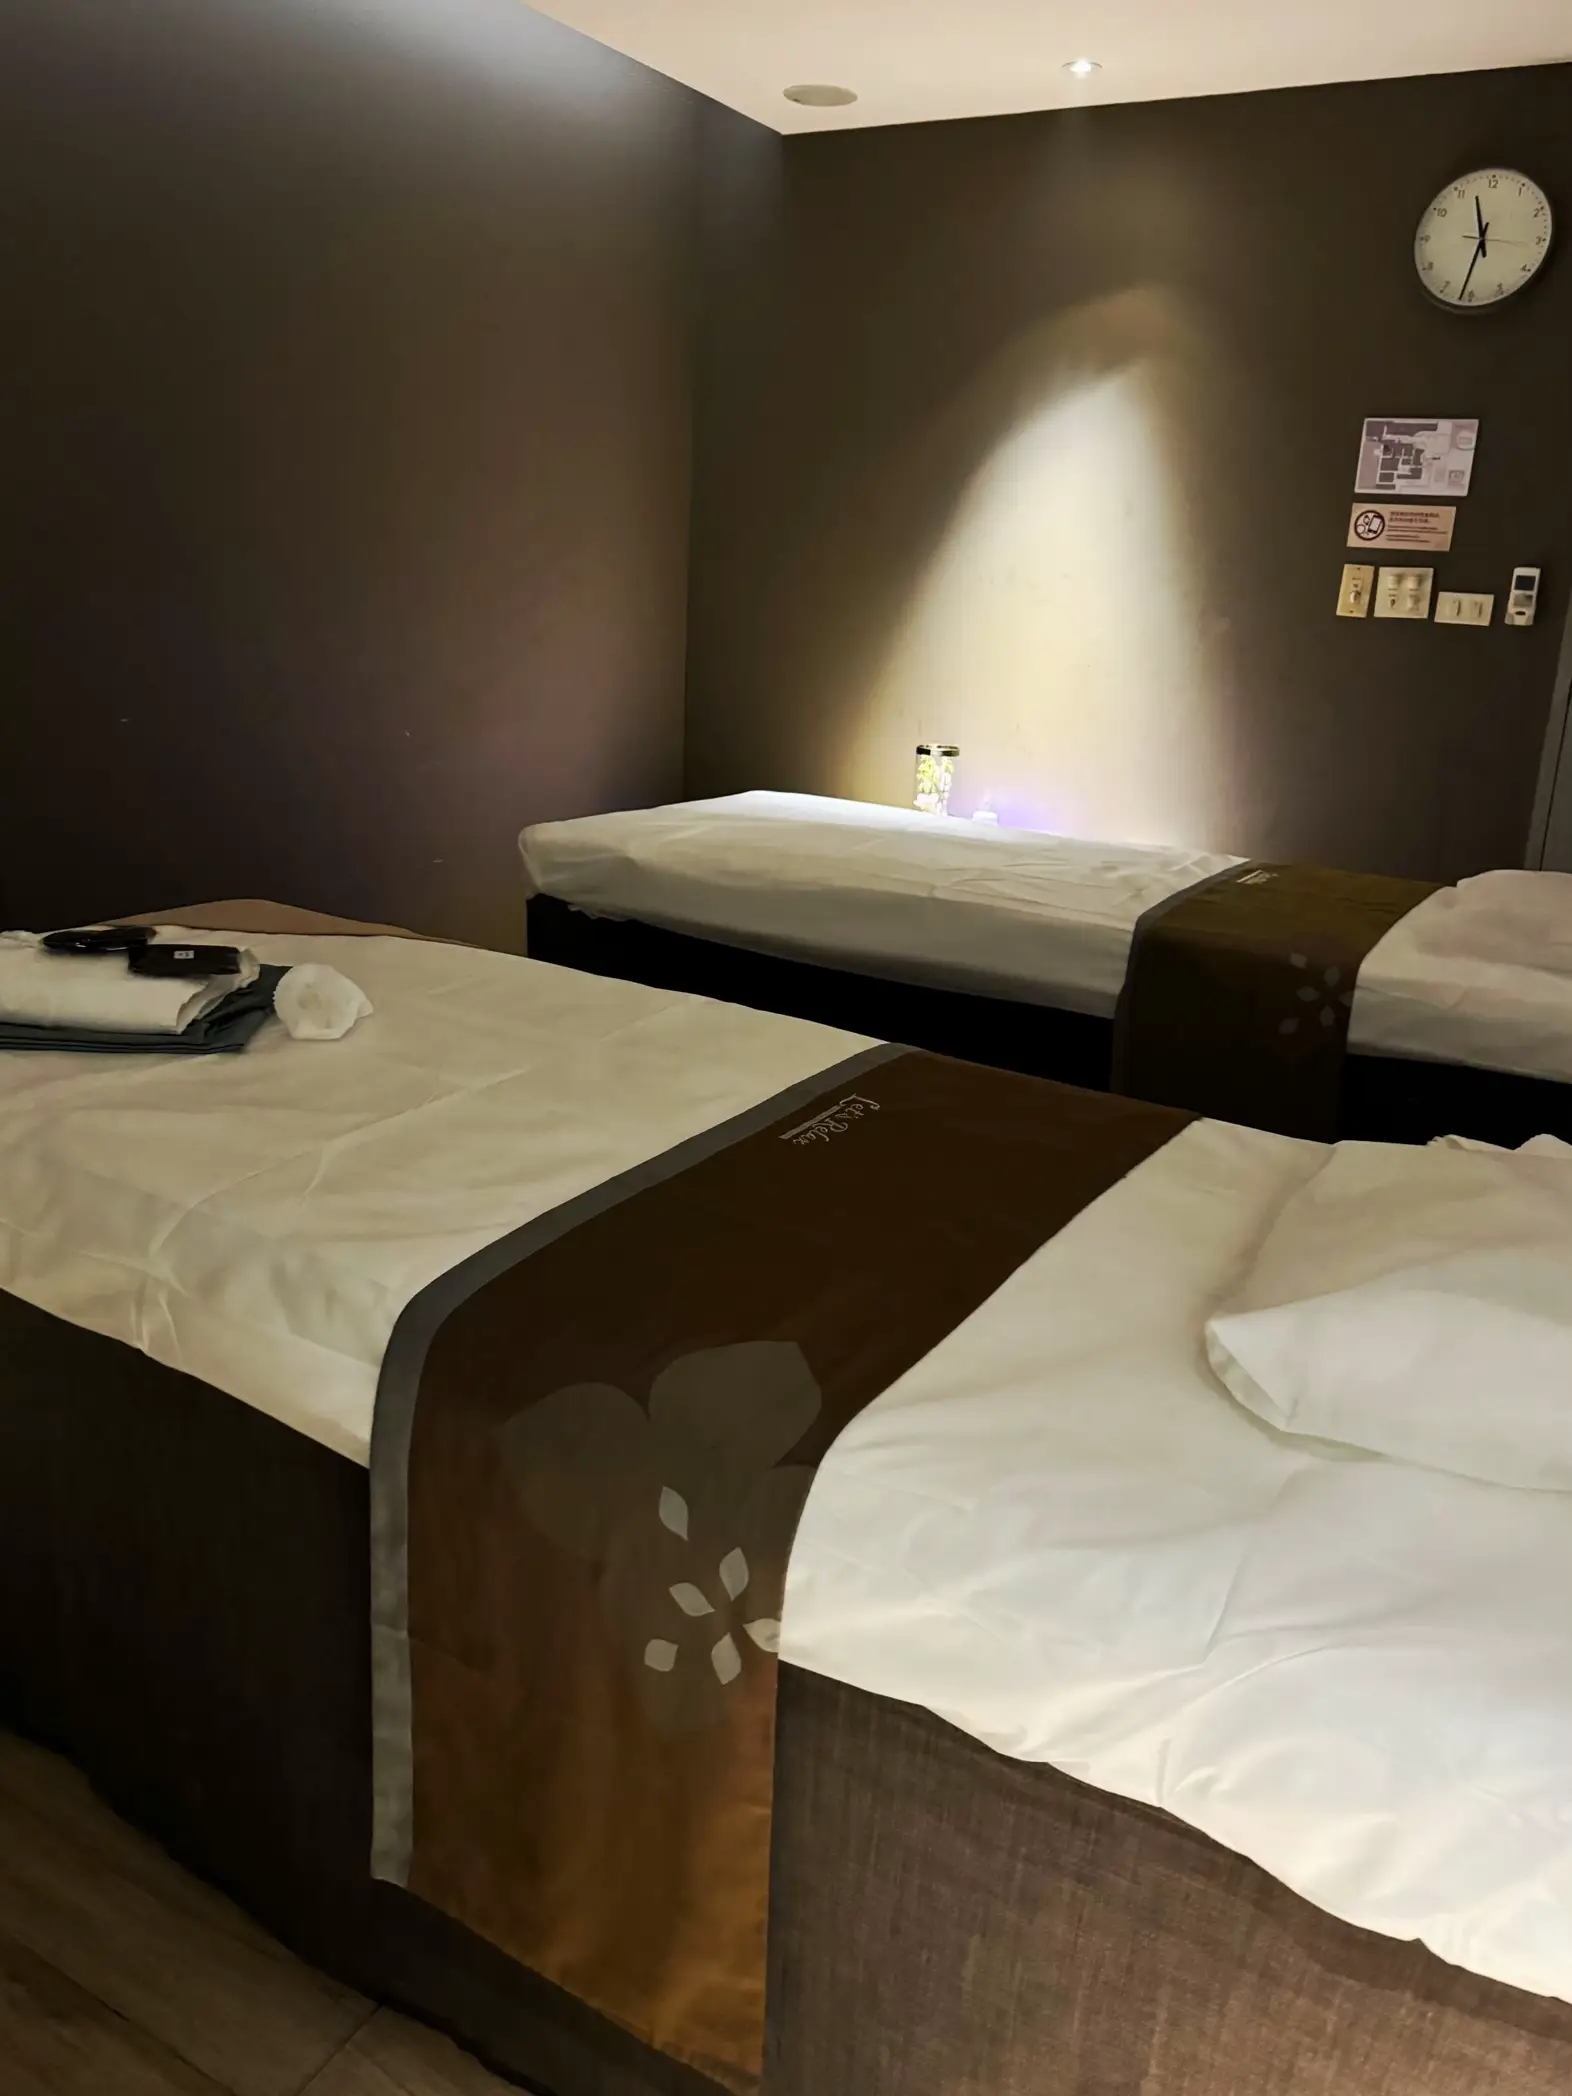 dallas conley recommends hot oil massage room pic